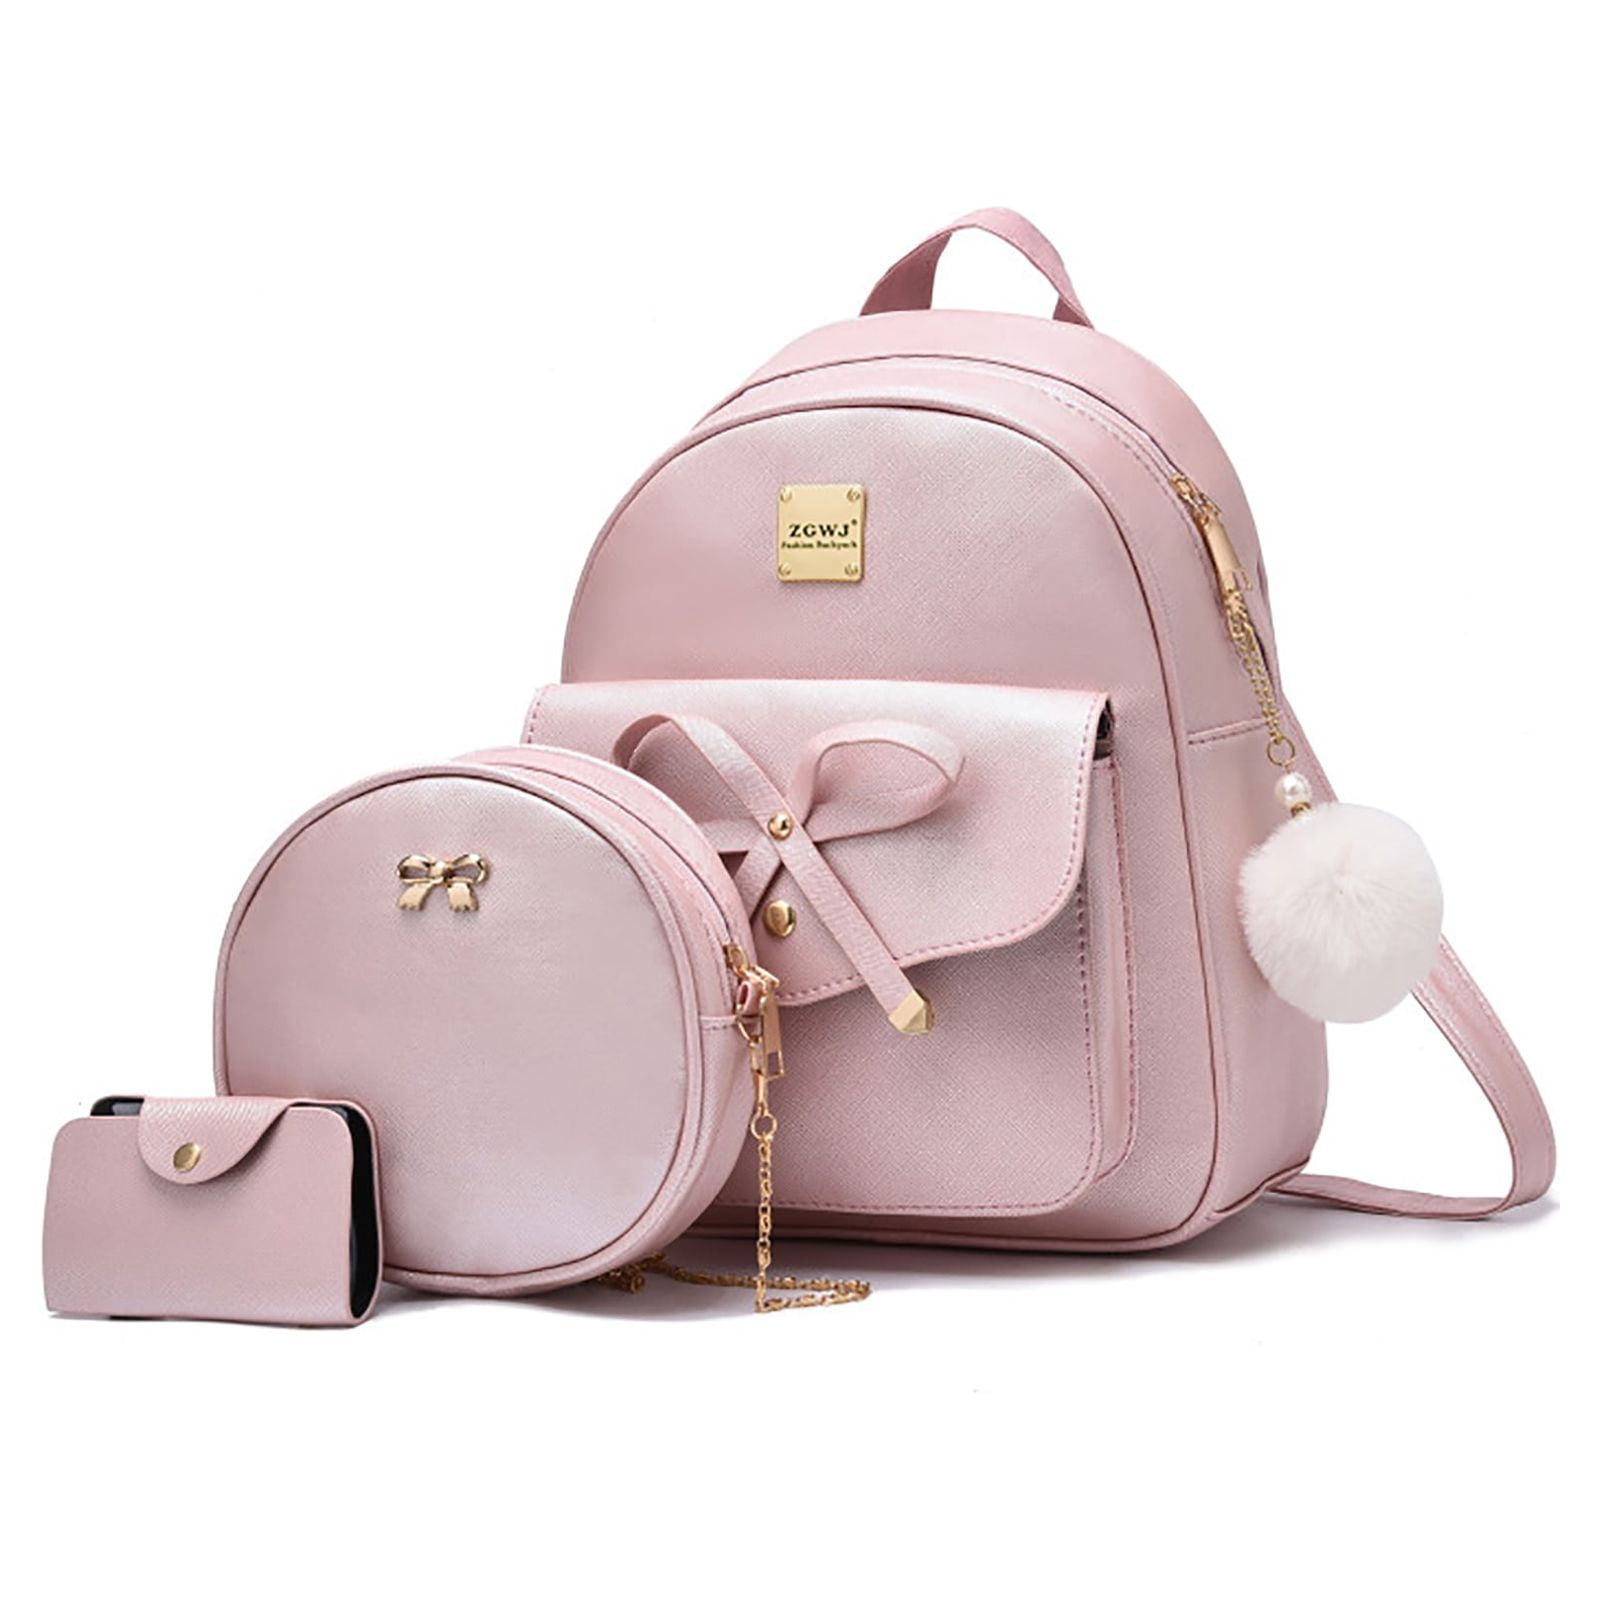 Hello Kitty Mini Backpack | Mini backpack, Hello kitty, Mini backpack purse